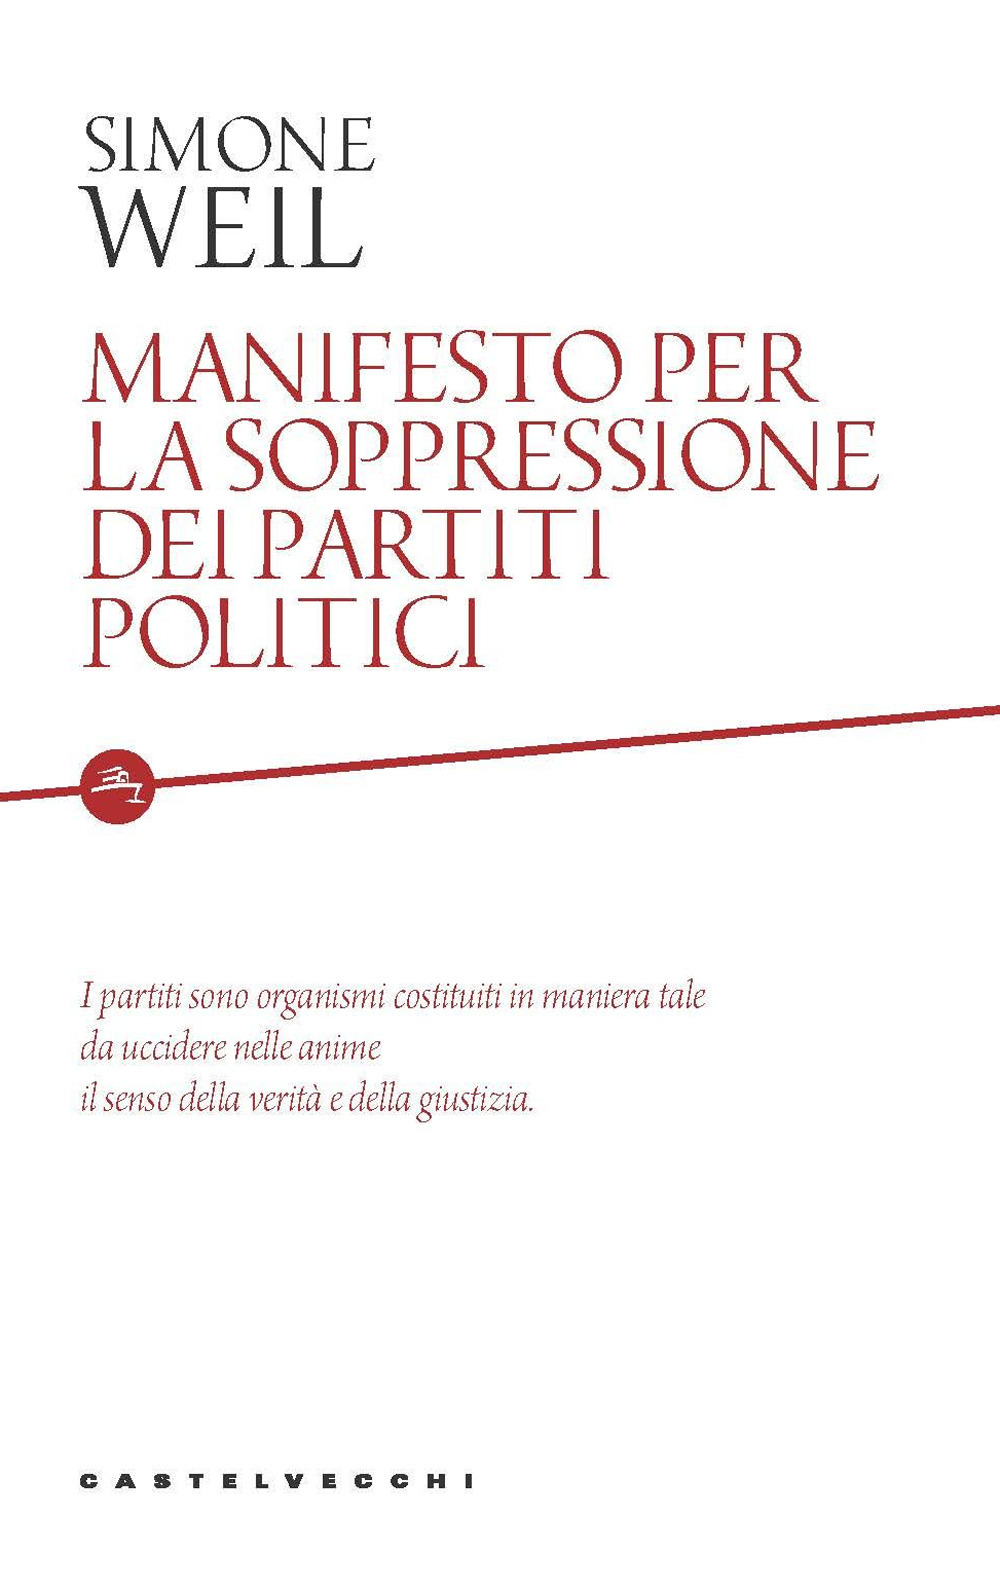 Image of Manifesto per la soppressione dei partiti politici